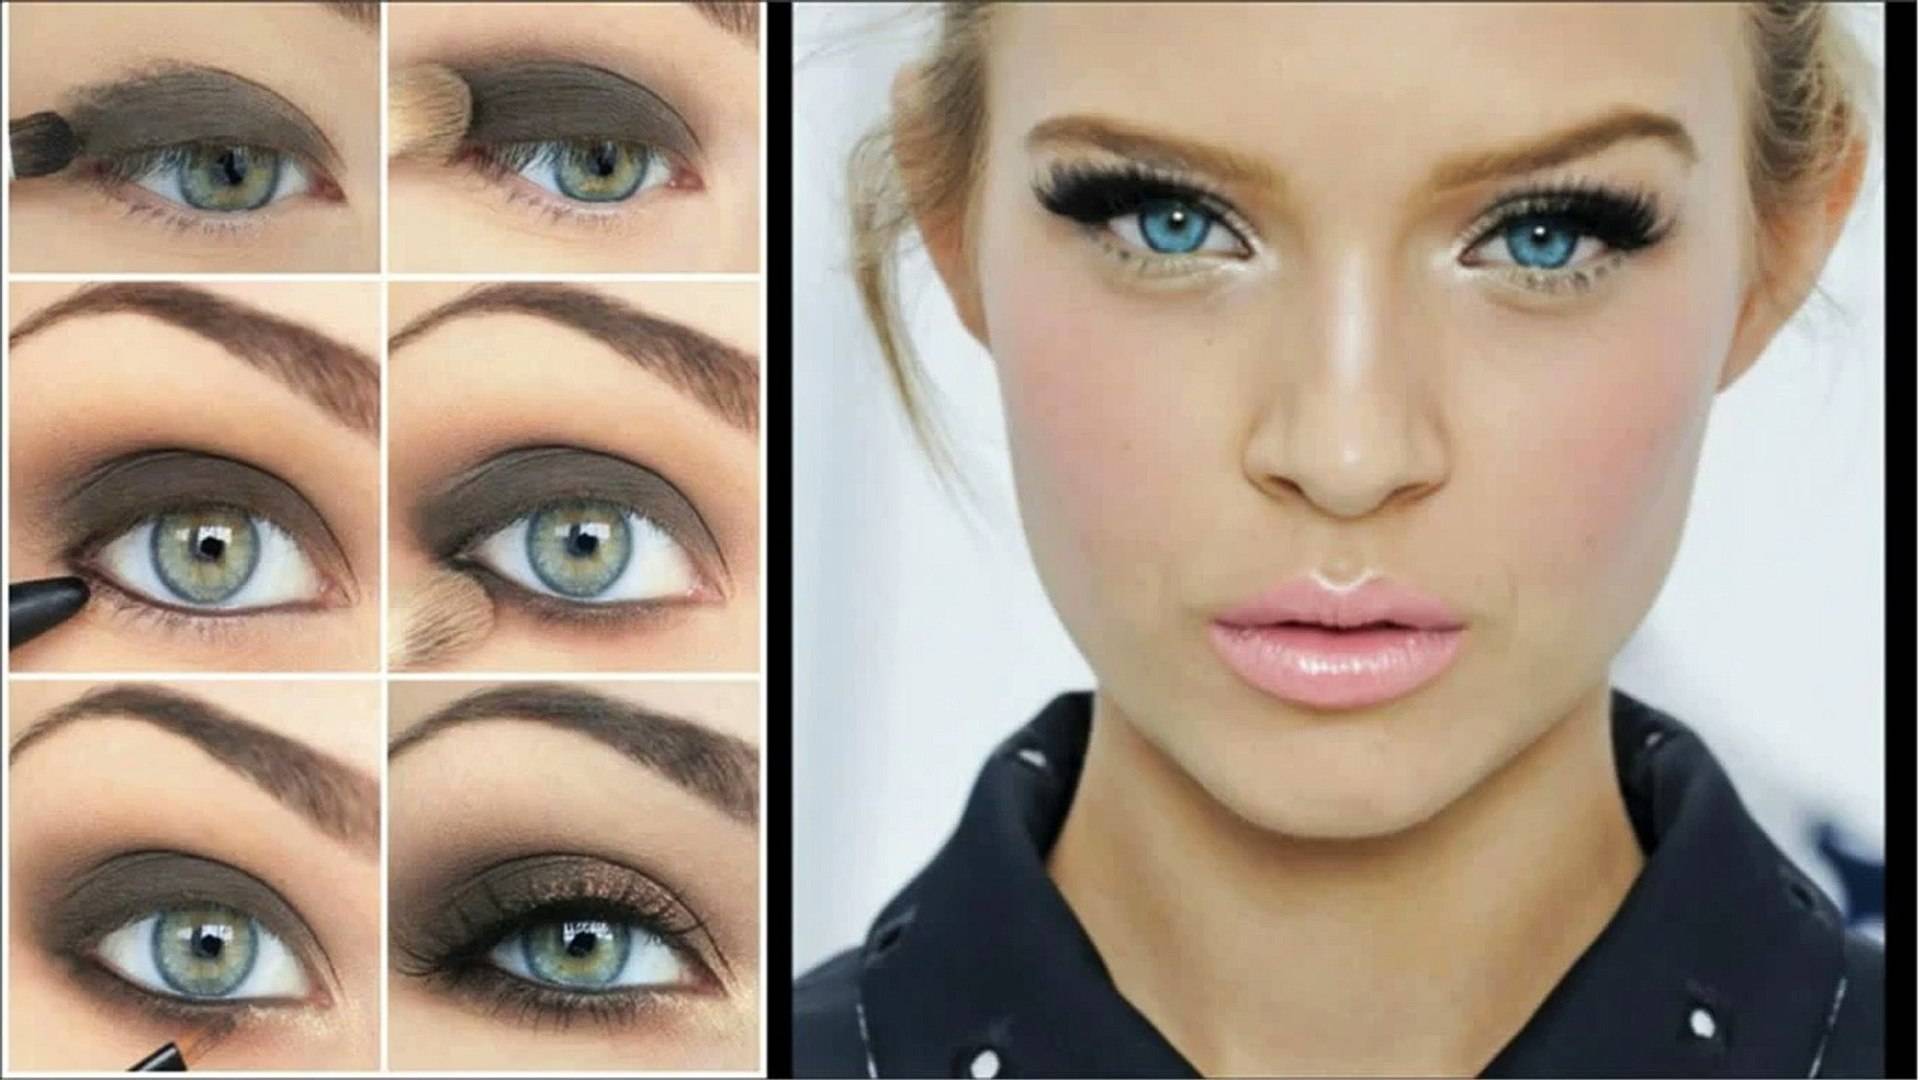 Как сделать глаза больше с помощью макияжа